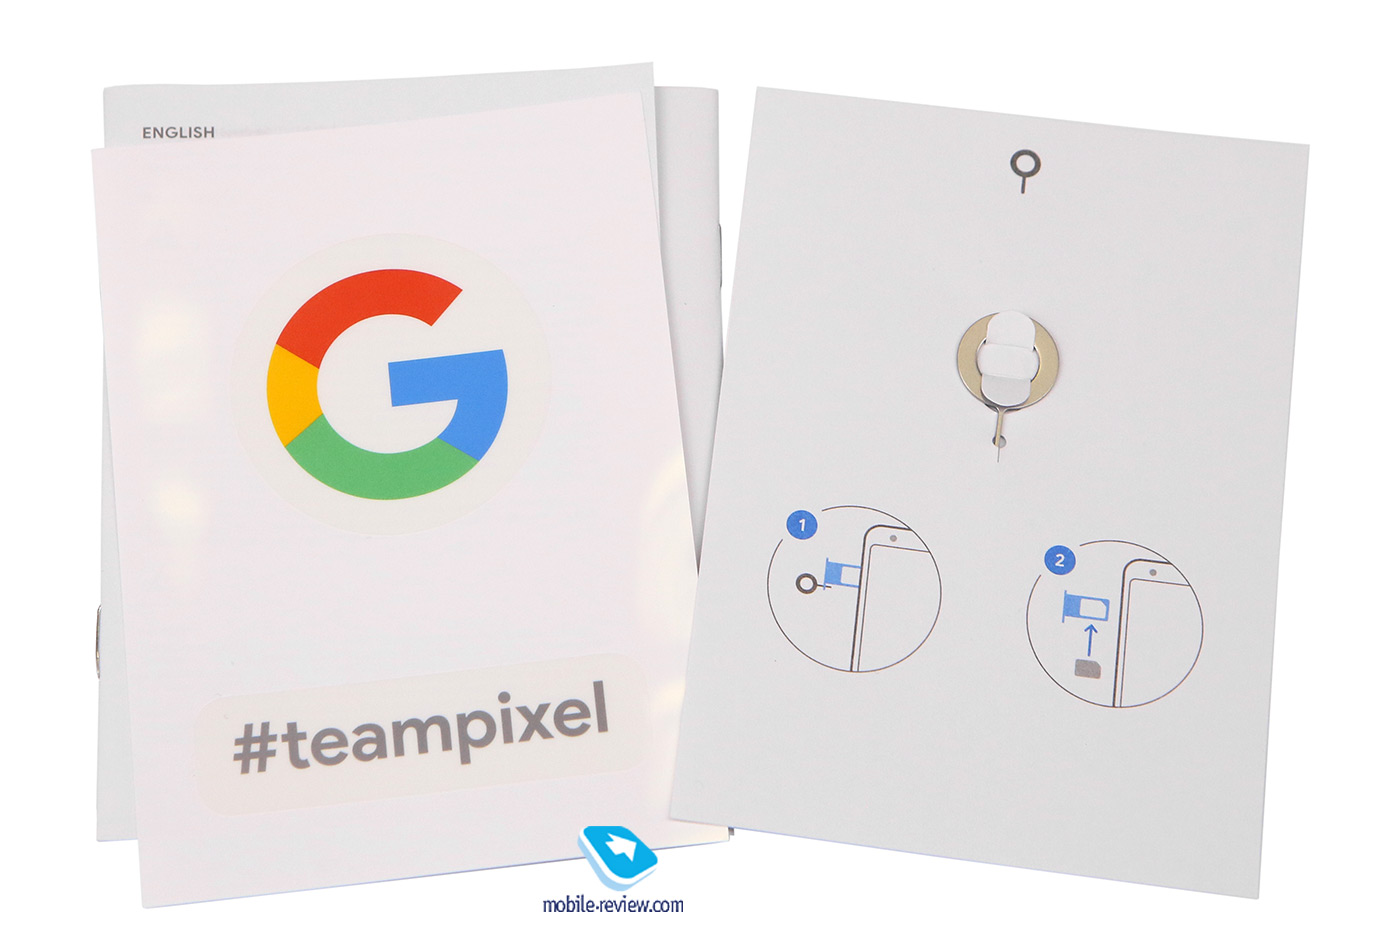   Google Pixel 3a XL